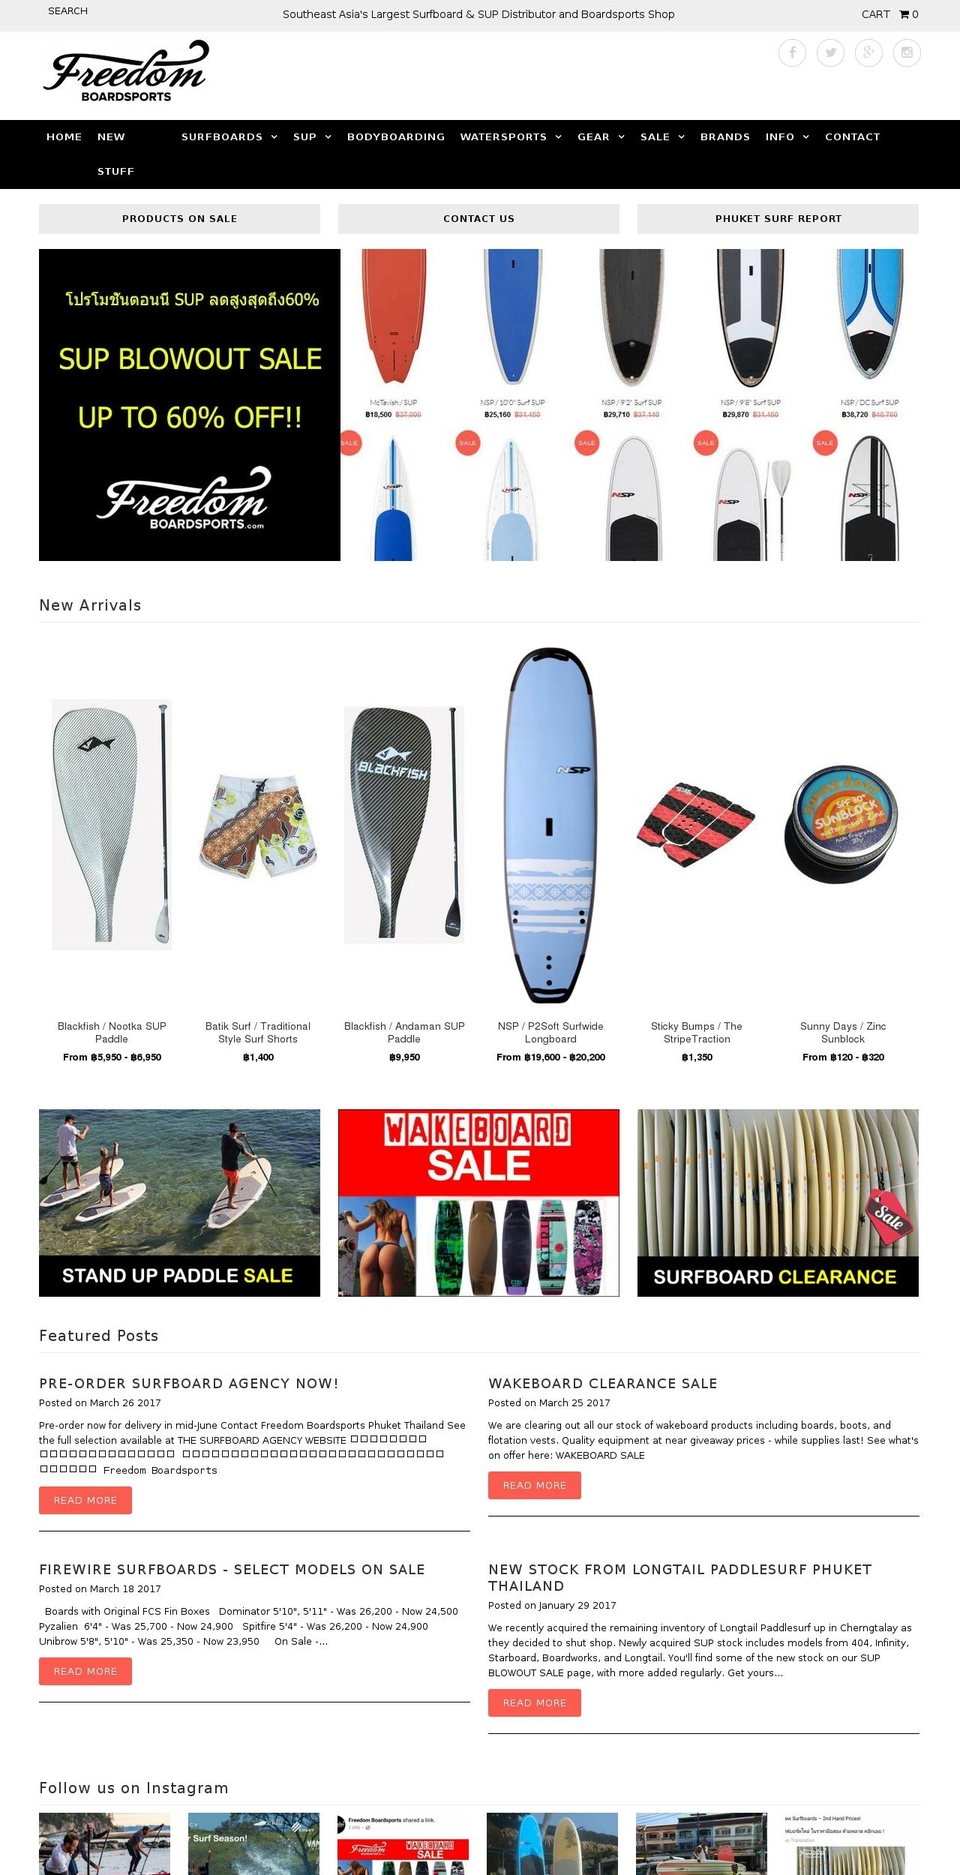 Fashionopolism Shopify theme site example freedomboardsports.com